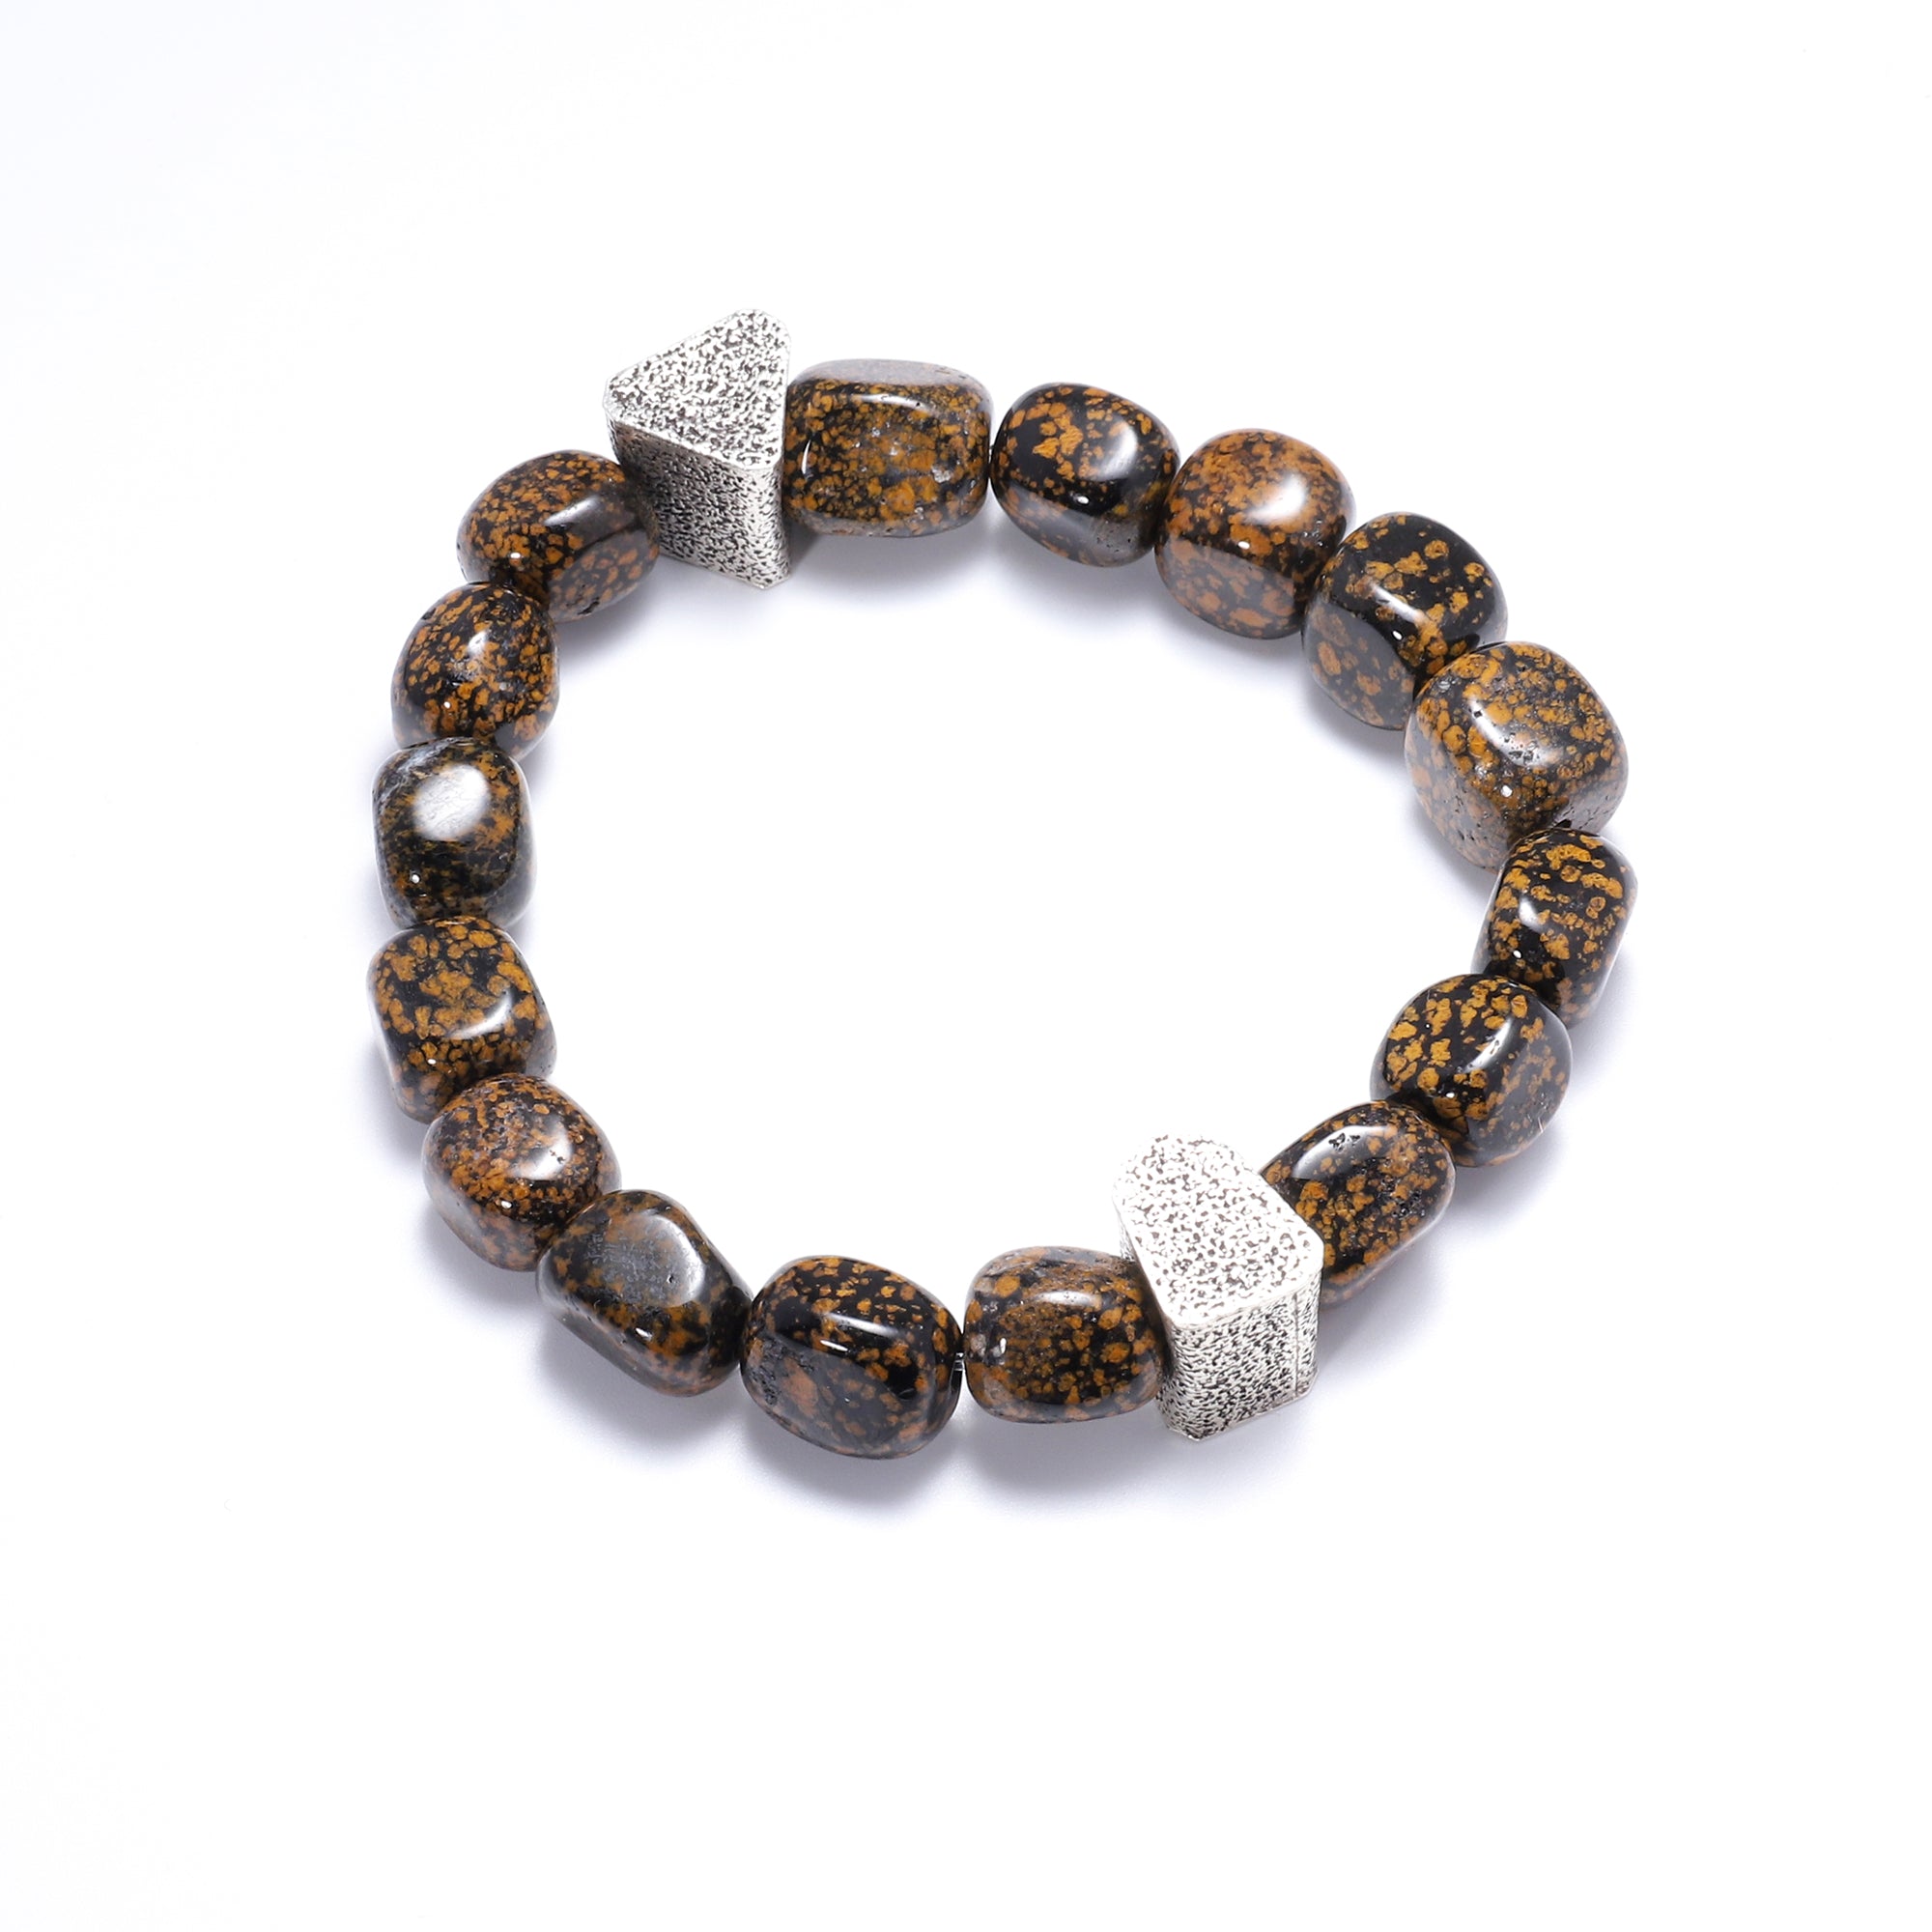 Natural Stone Bracelets for Men - 10mm Volcanic Stone